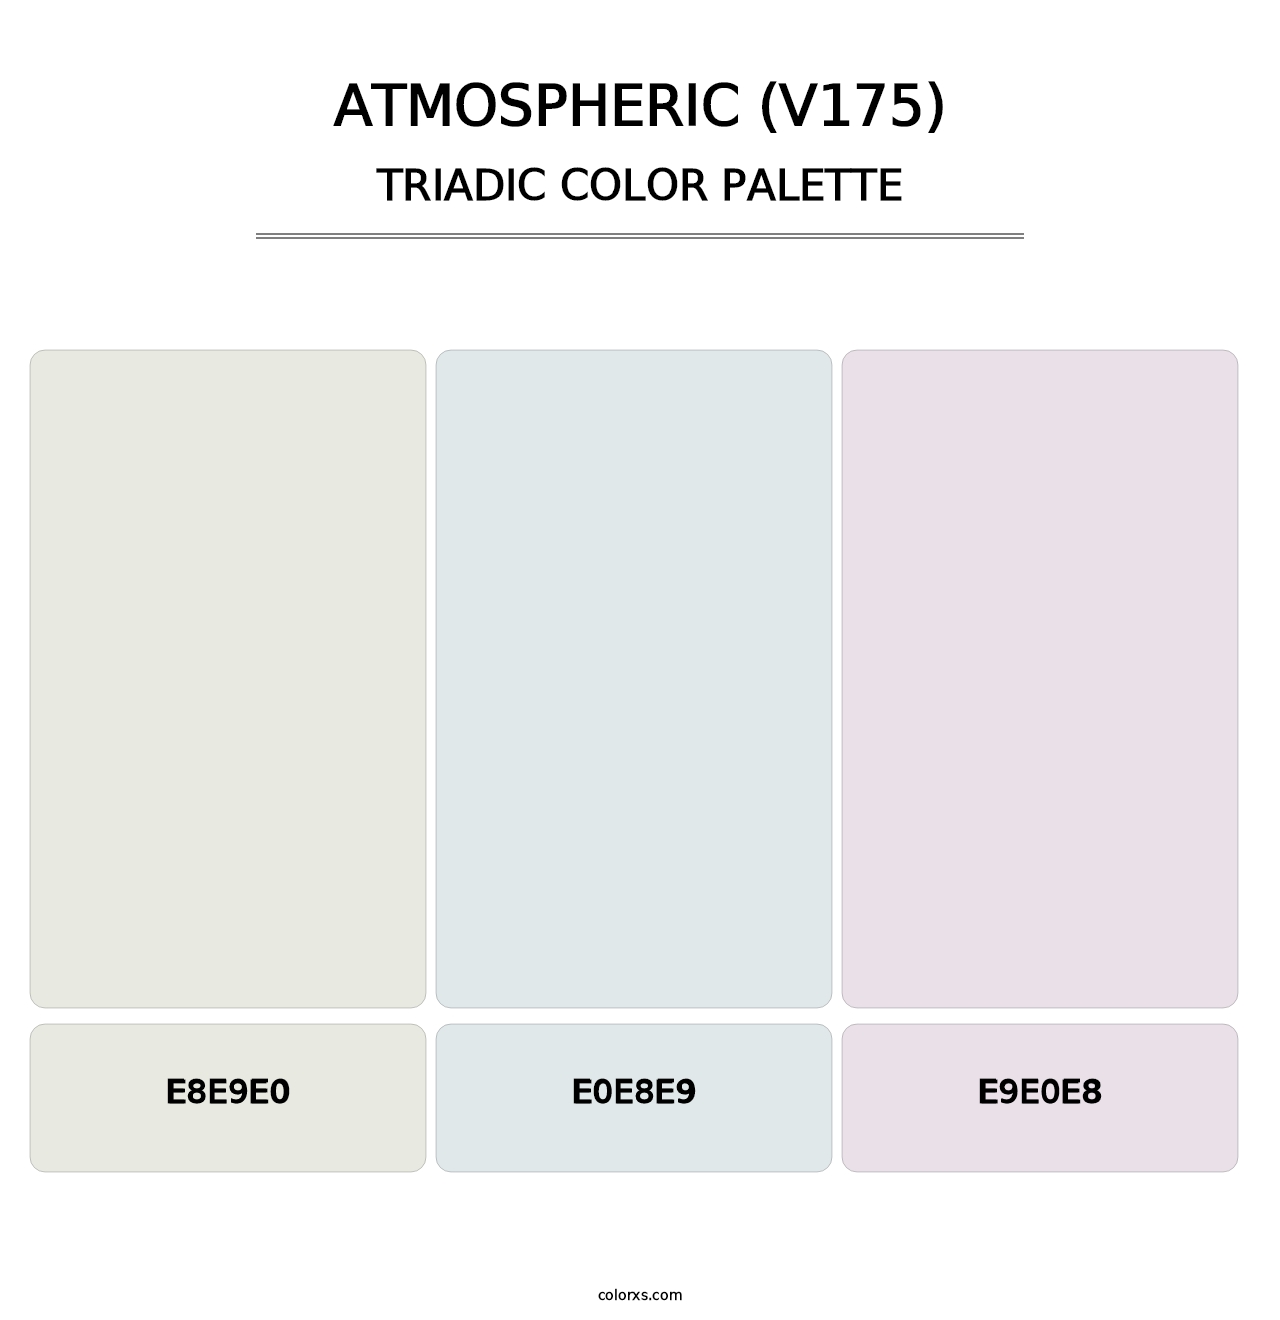 Atmospheric (V175) - Triadic Color Palette